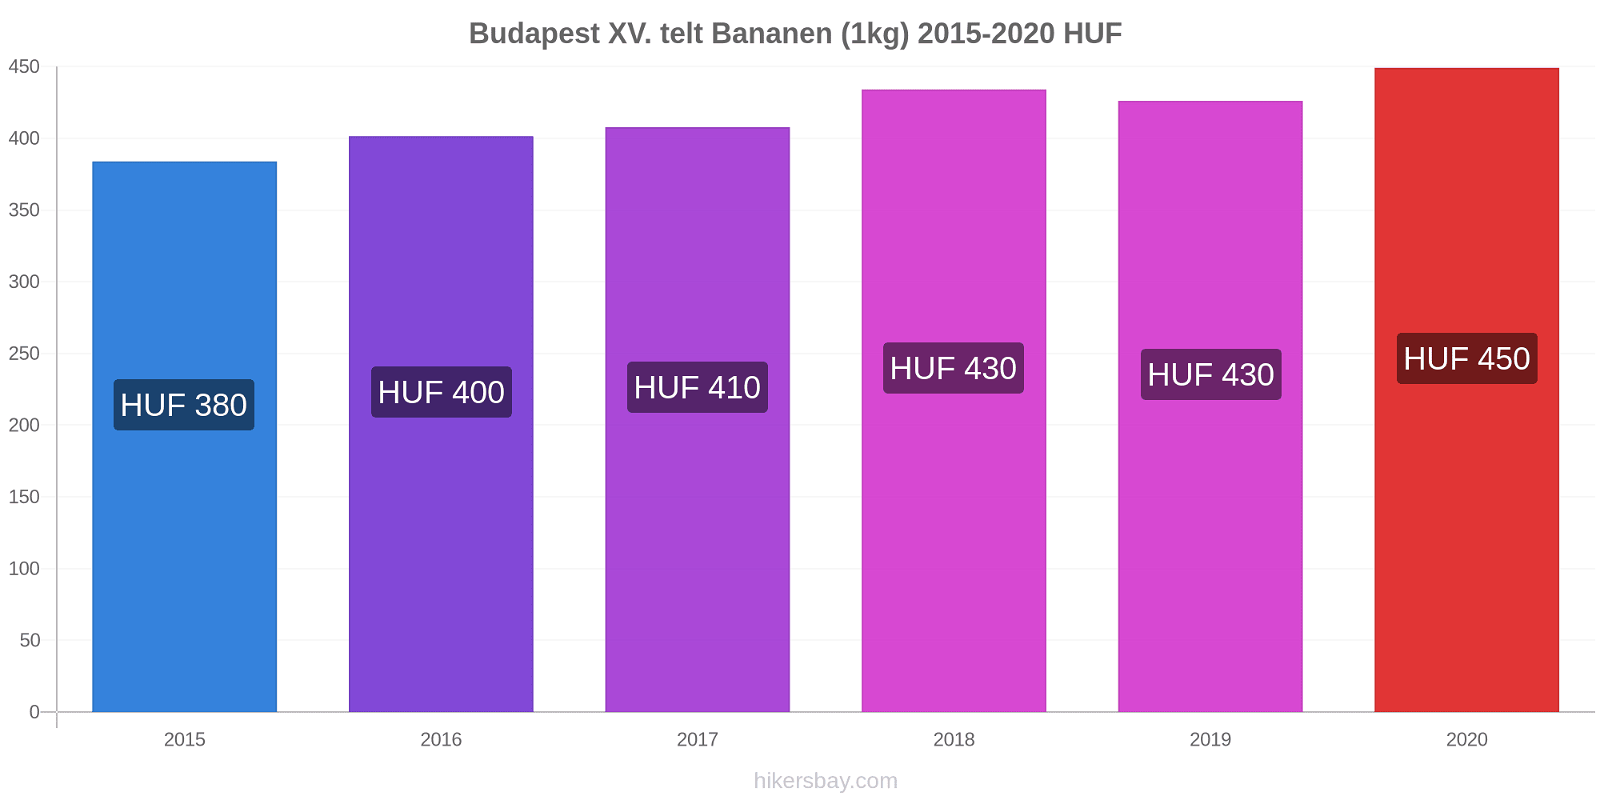 Budapest XV. telt prijswijzigingen Banaan (1kg) hikersbay.com